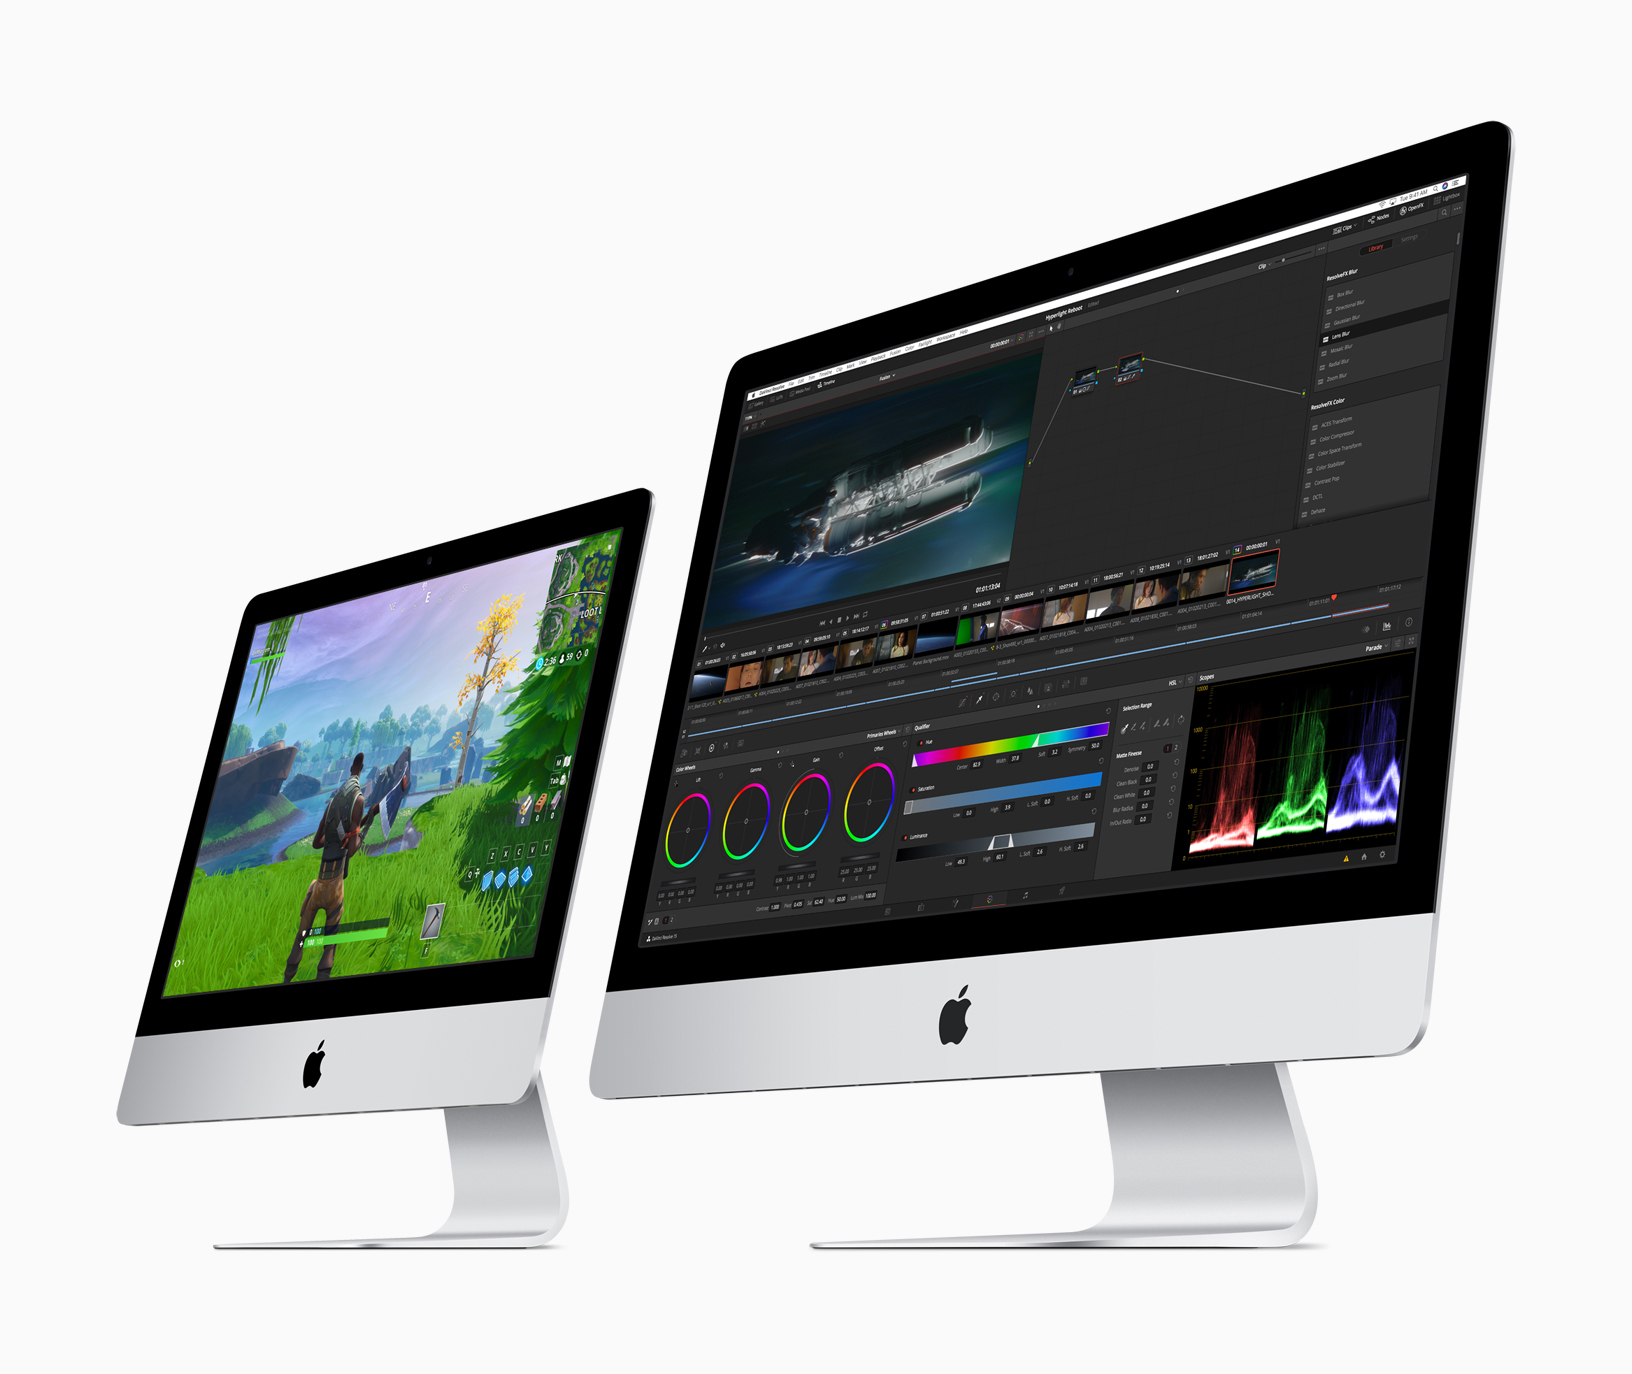 Les Mac pourraient enfin recevoir Face ID d'après le code de macOS Big Sur